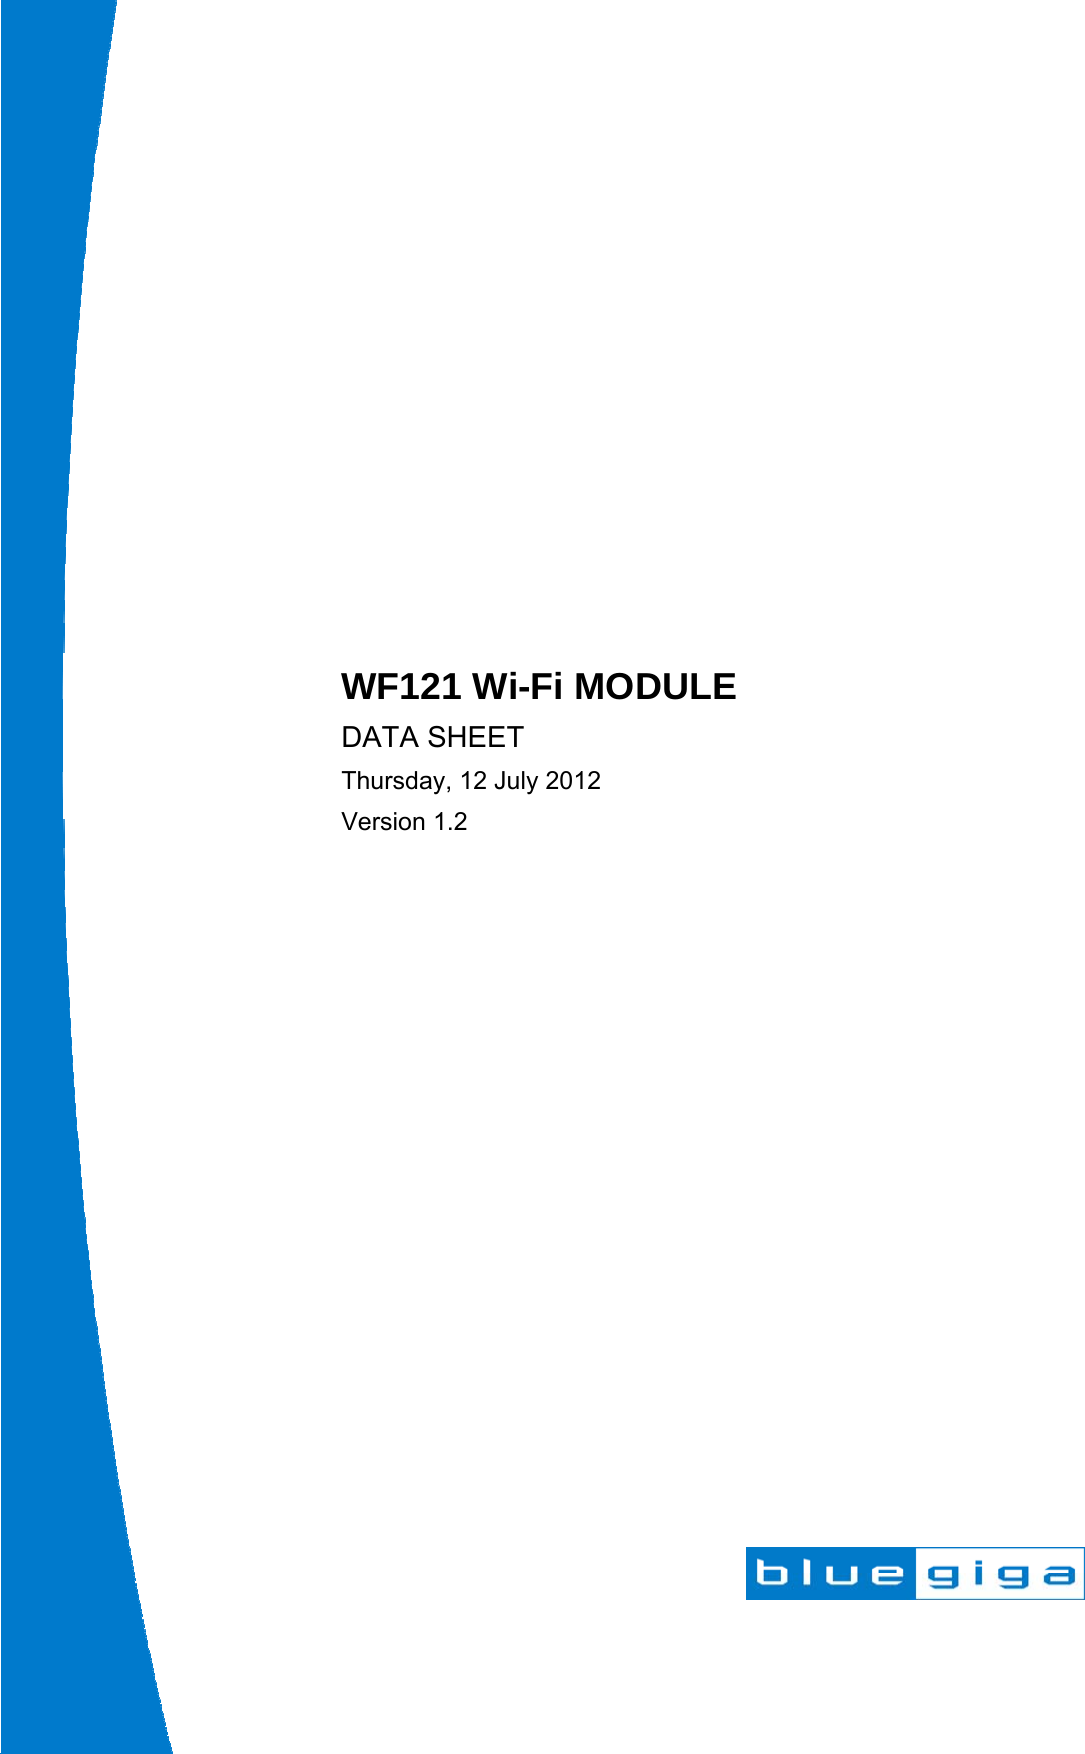                            WF121 Wi-Fi MODULE DATA SHEET Thursday, 12 July 2012 Version 1.2  